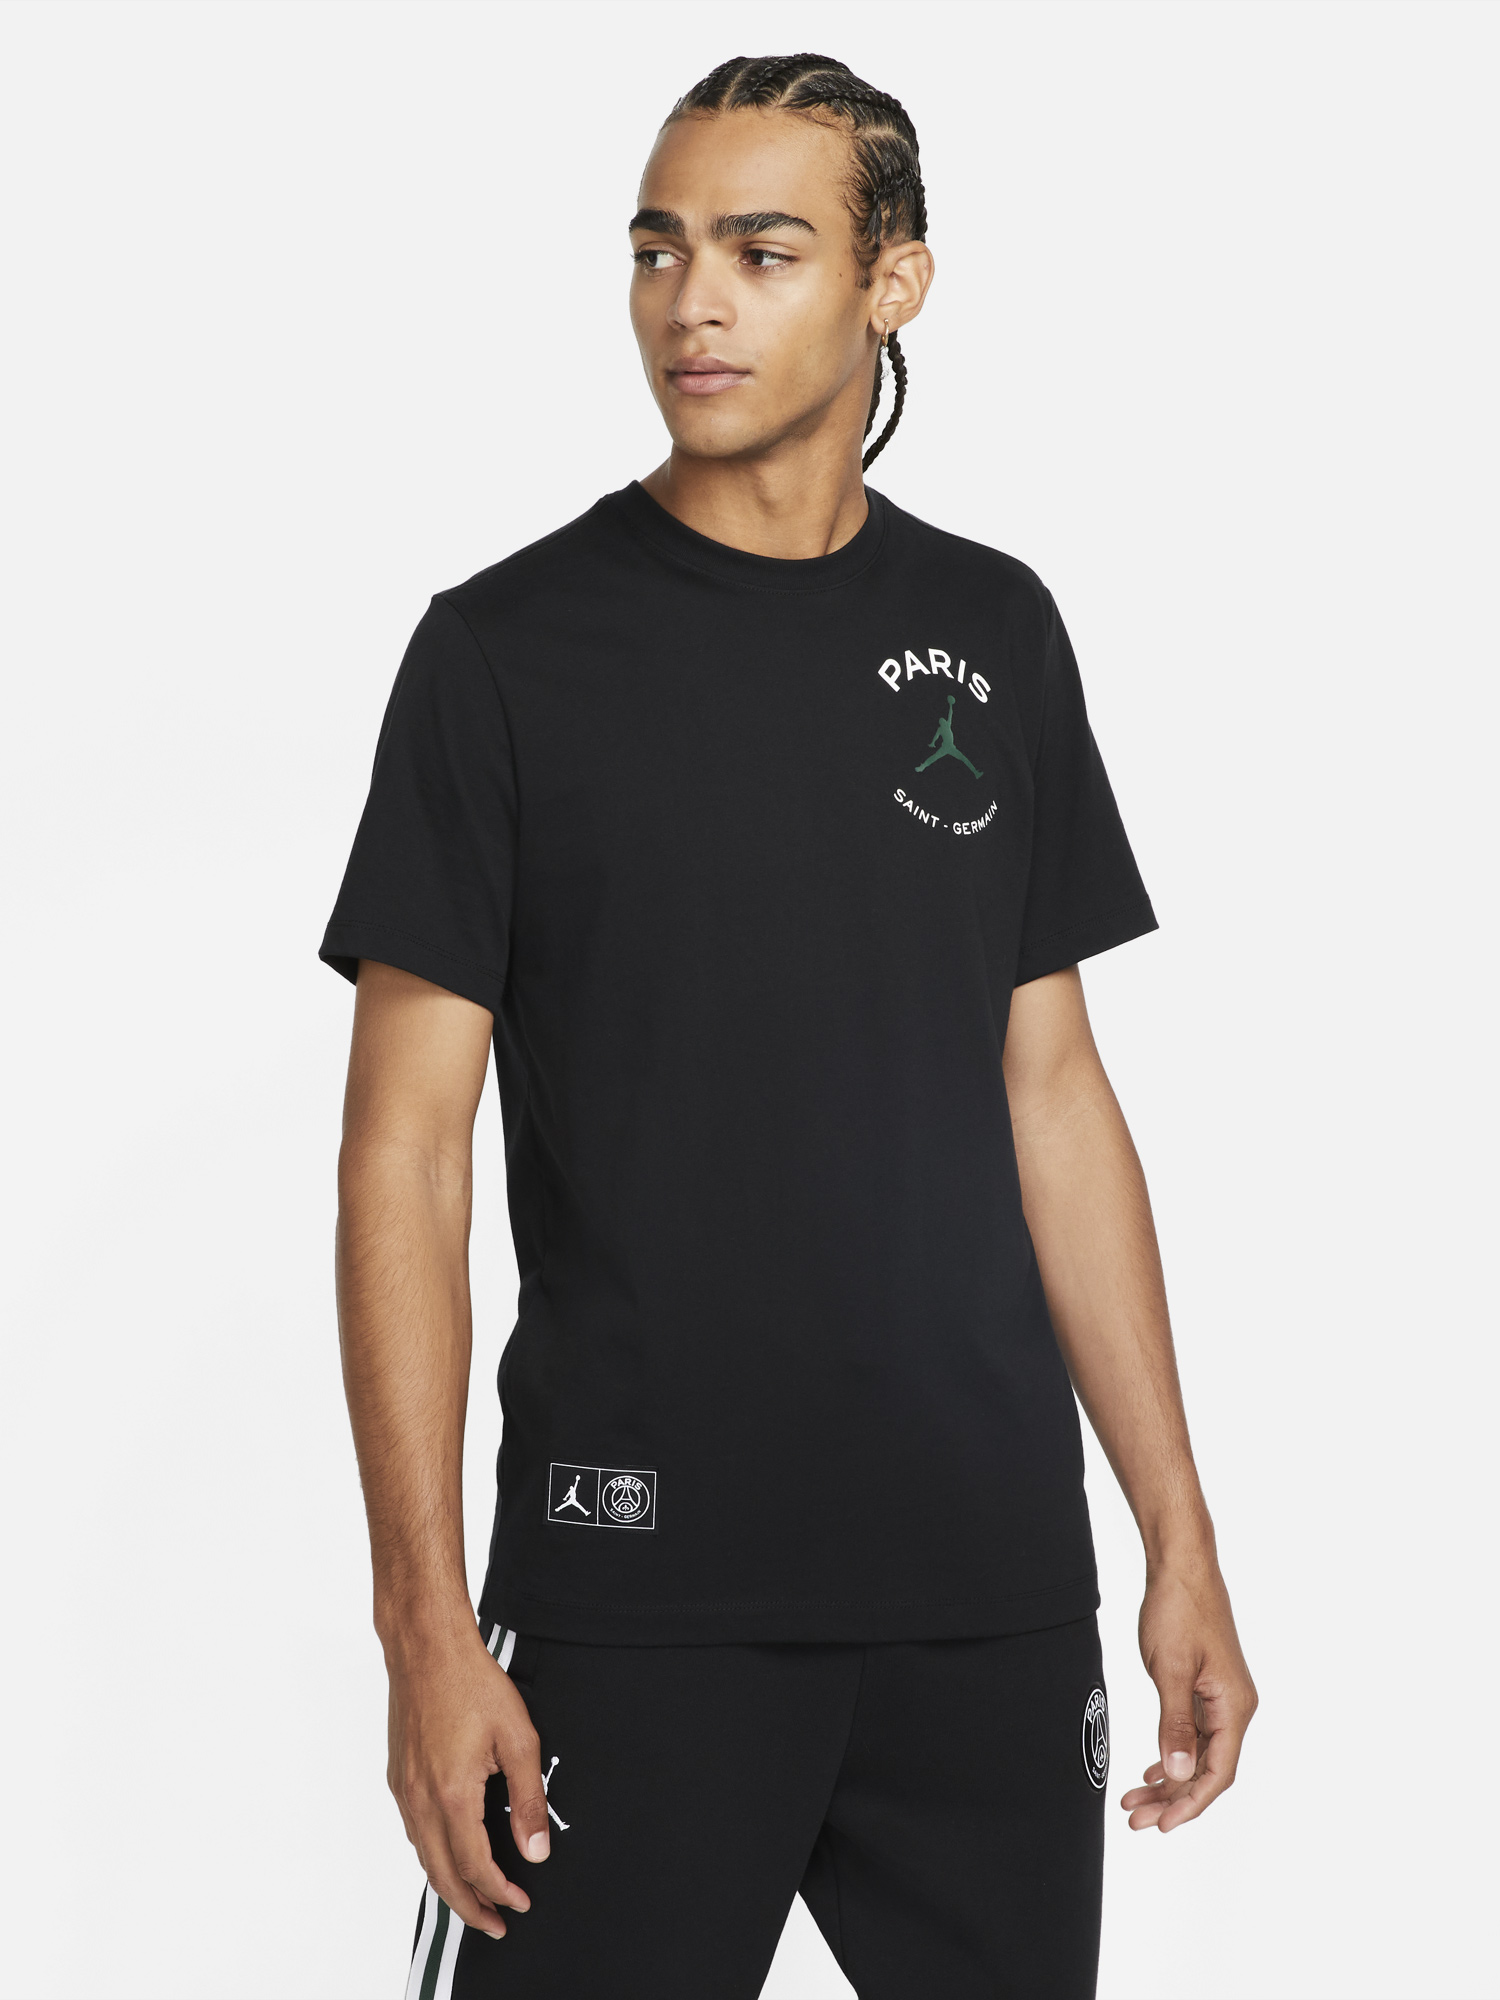 jordan-psg-paris-saint-germain-t-shirt-black-noble-green-1